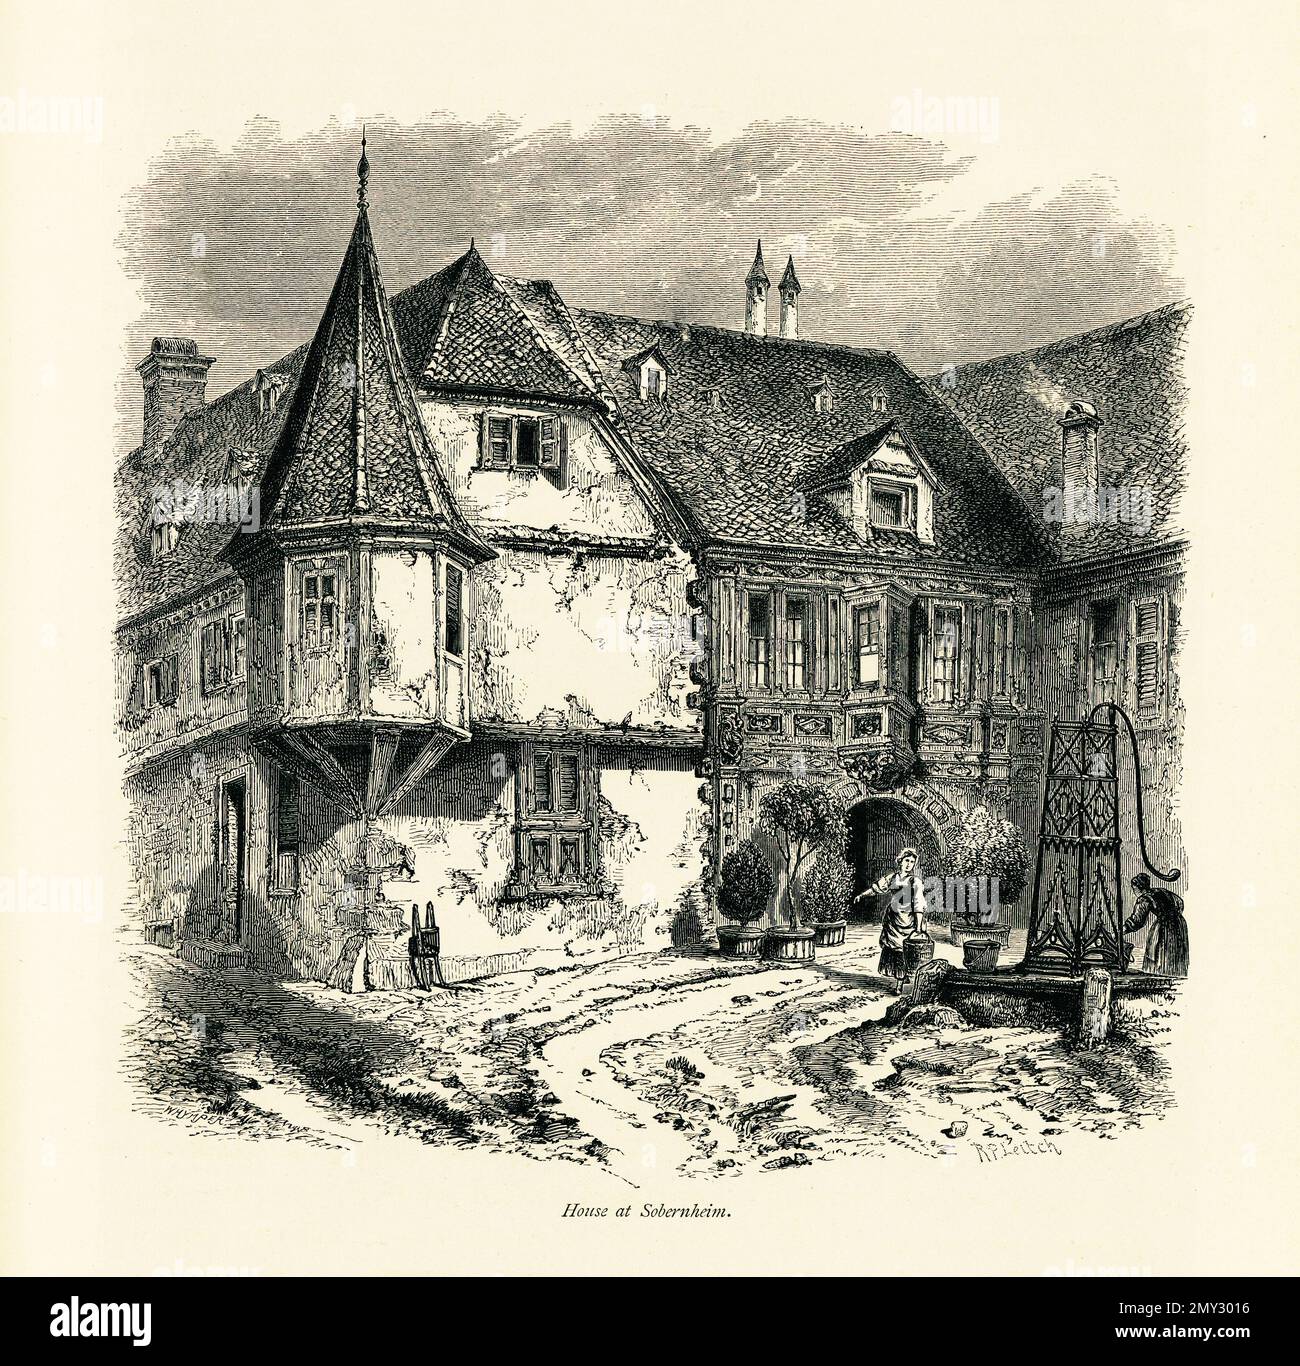 Antica incisione di una casa a Bad Sobernheim, un villaggio situato sul fiume Nahe, Germania. Illustrazione pubblicata in picturesque Europe, Vol. III Foto Stock